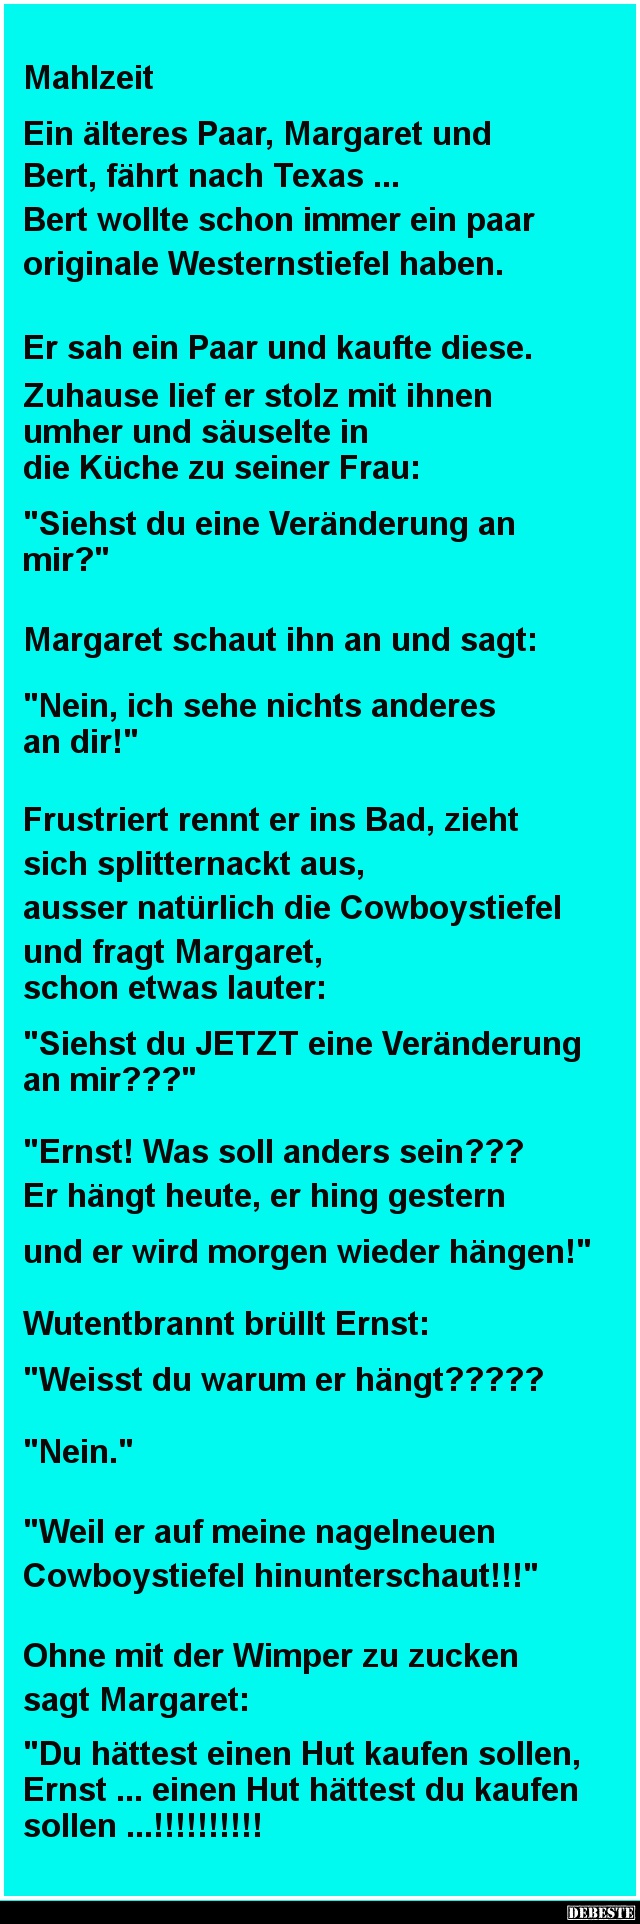 Ein älteres Paar, Margaret und Bert - Lustige Bilder | DEBESTE.de